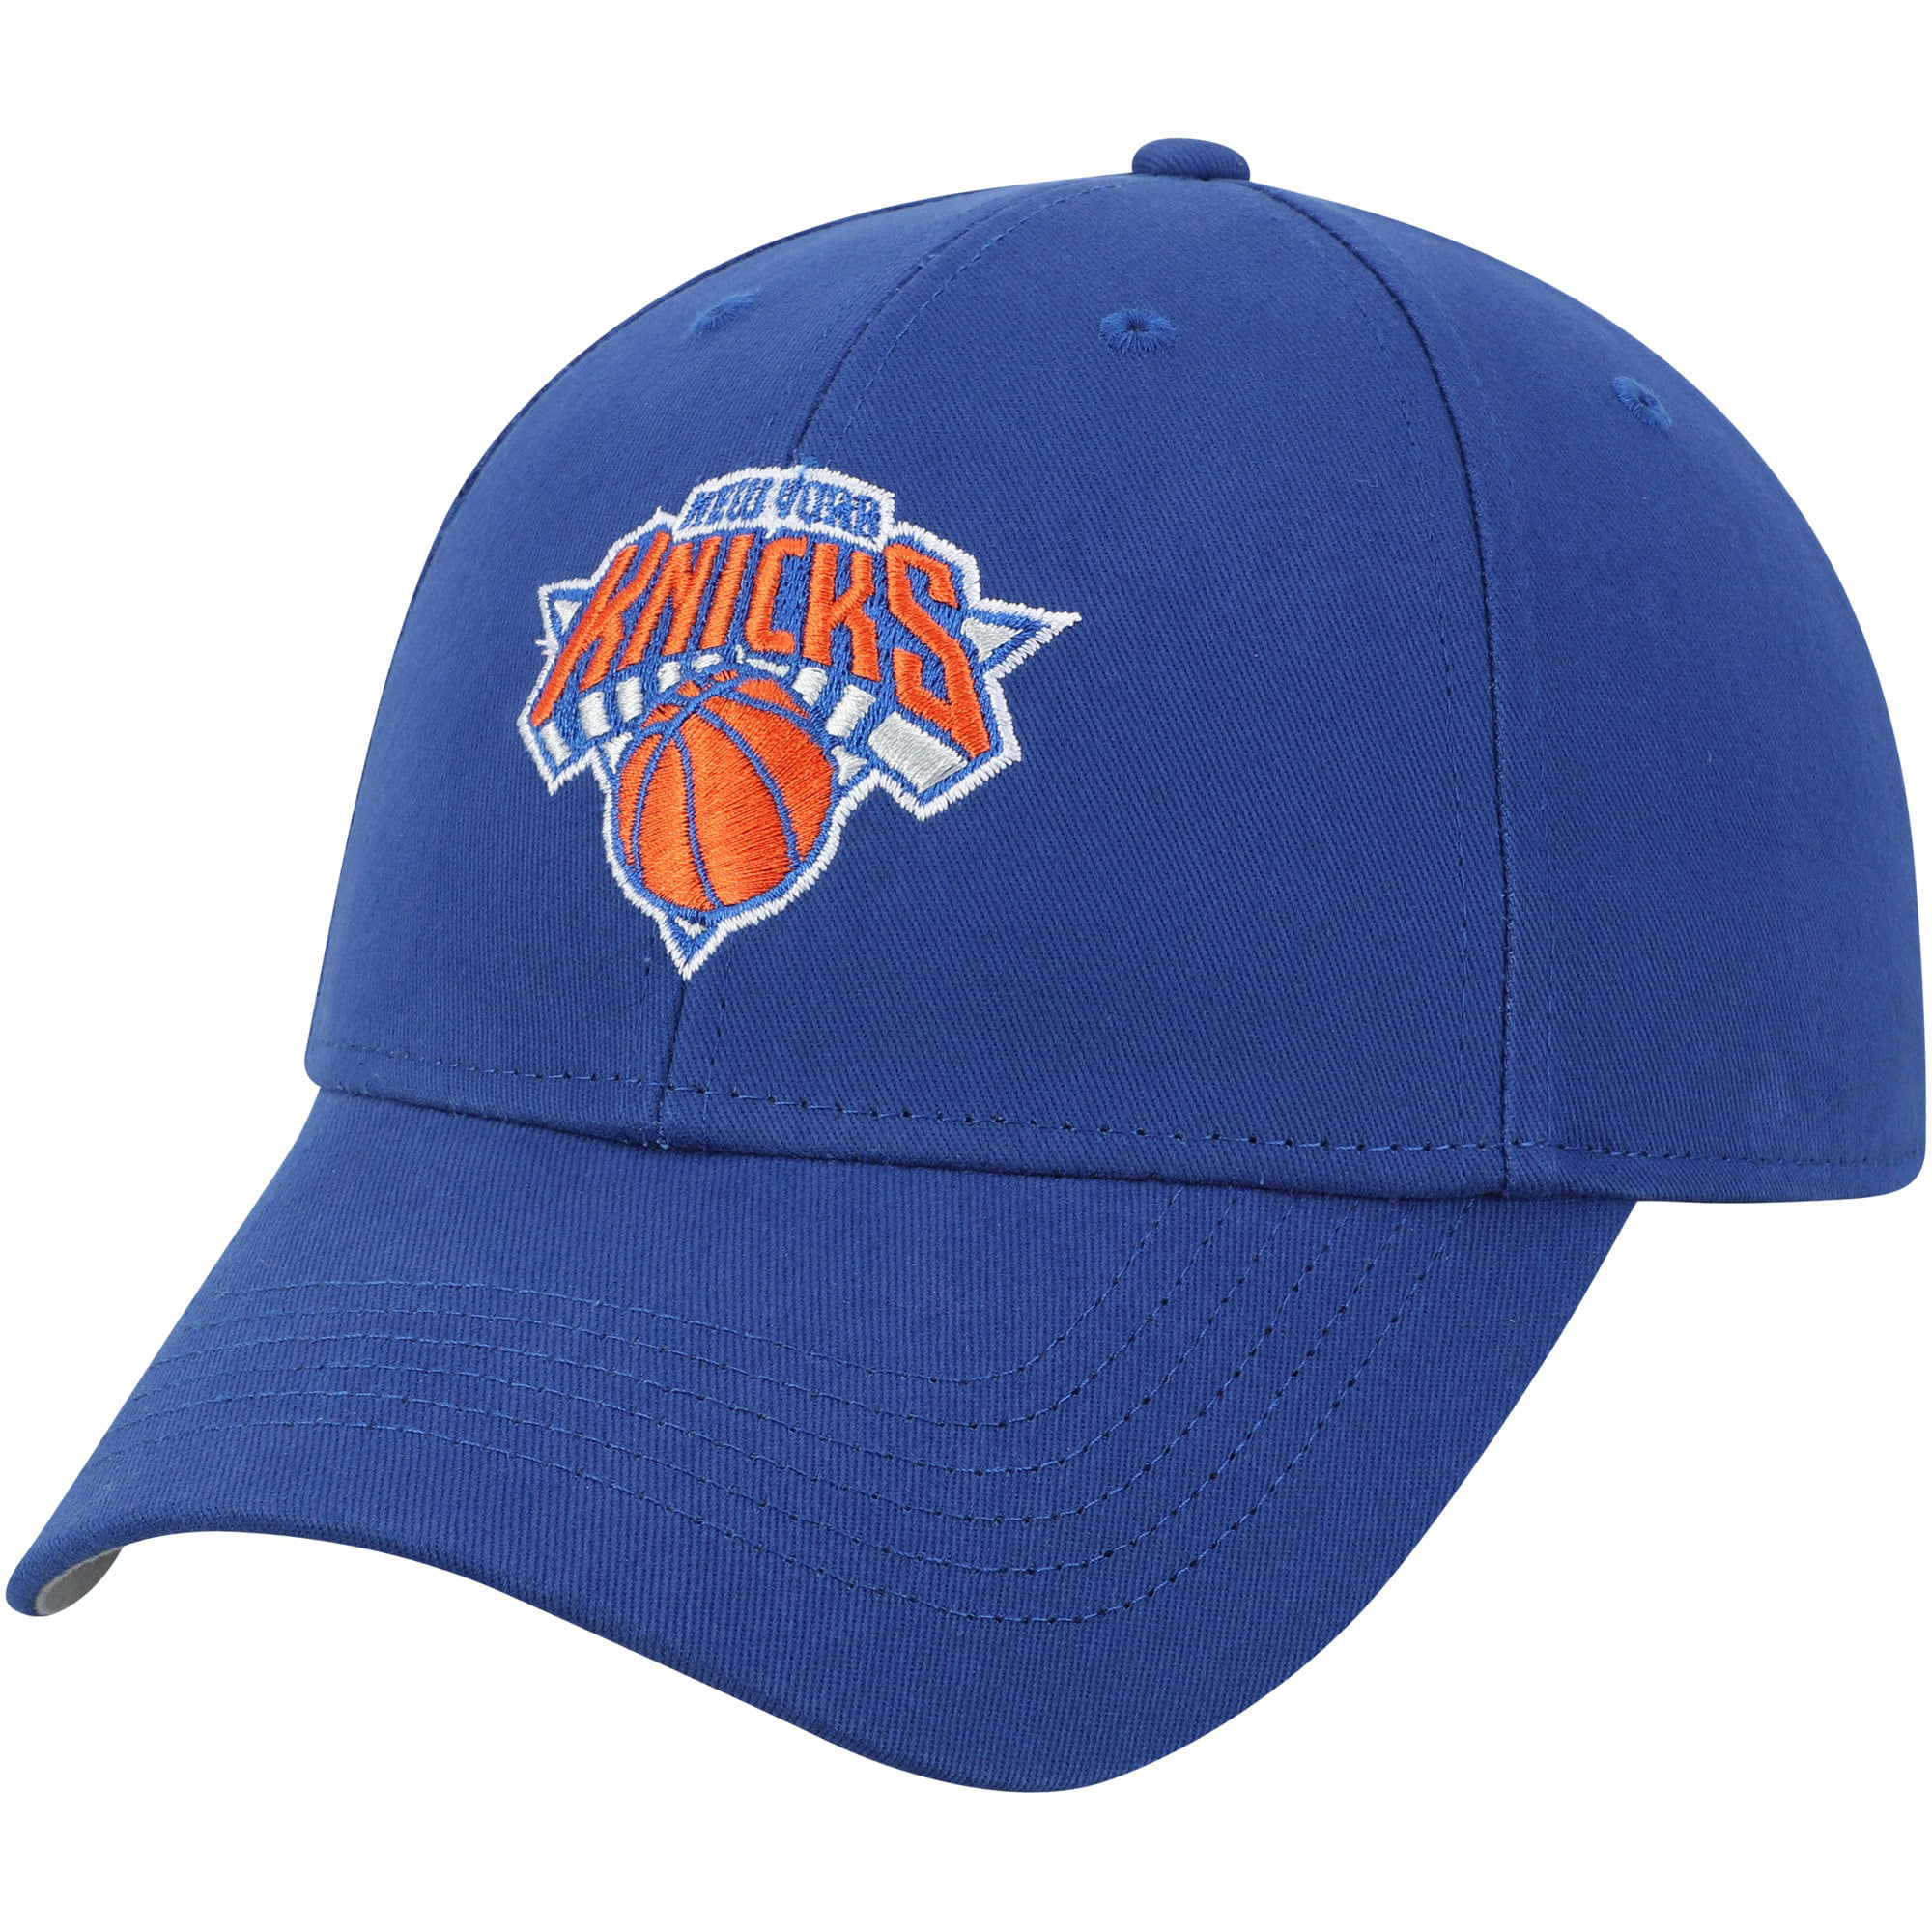 Fan Favorite - NBA New York Knicks Basic Cap/Hat - Fan Favorite ...